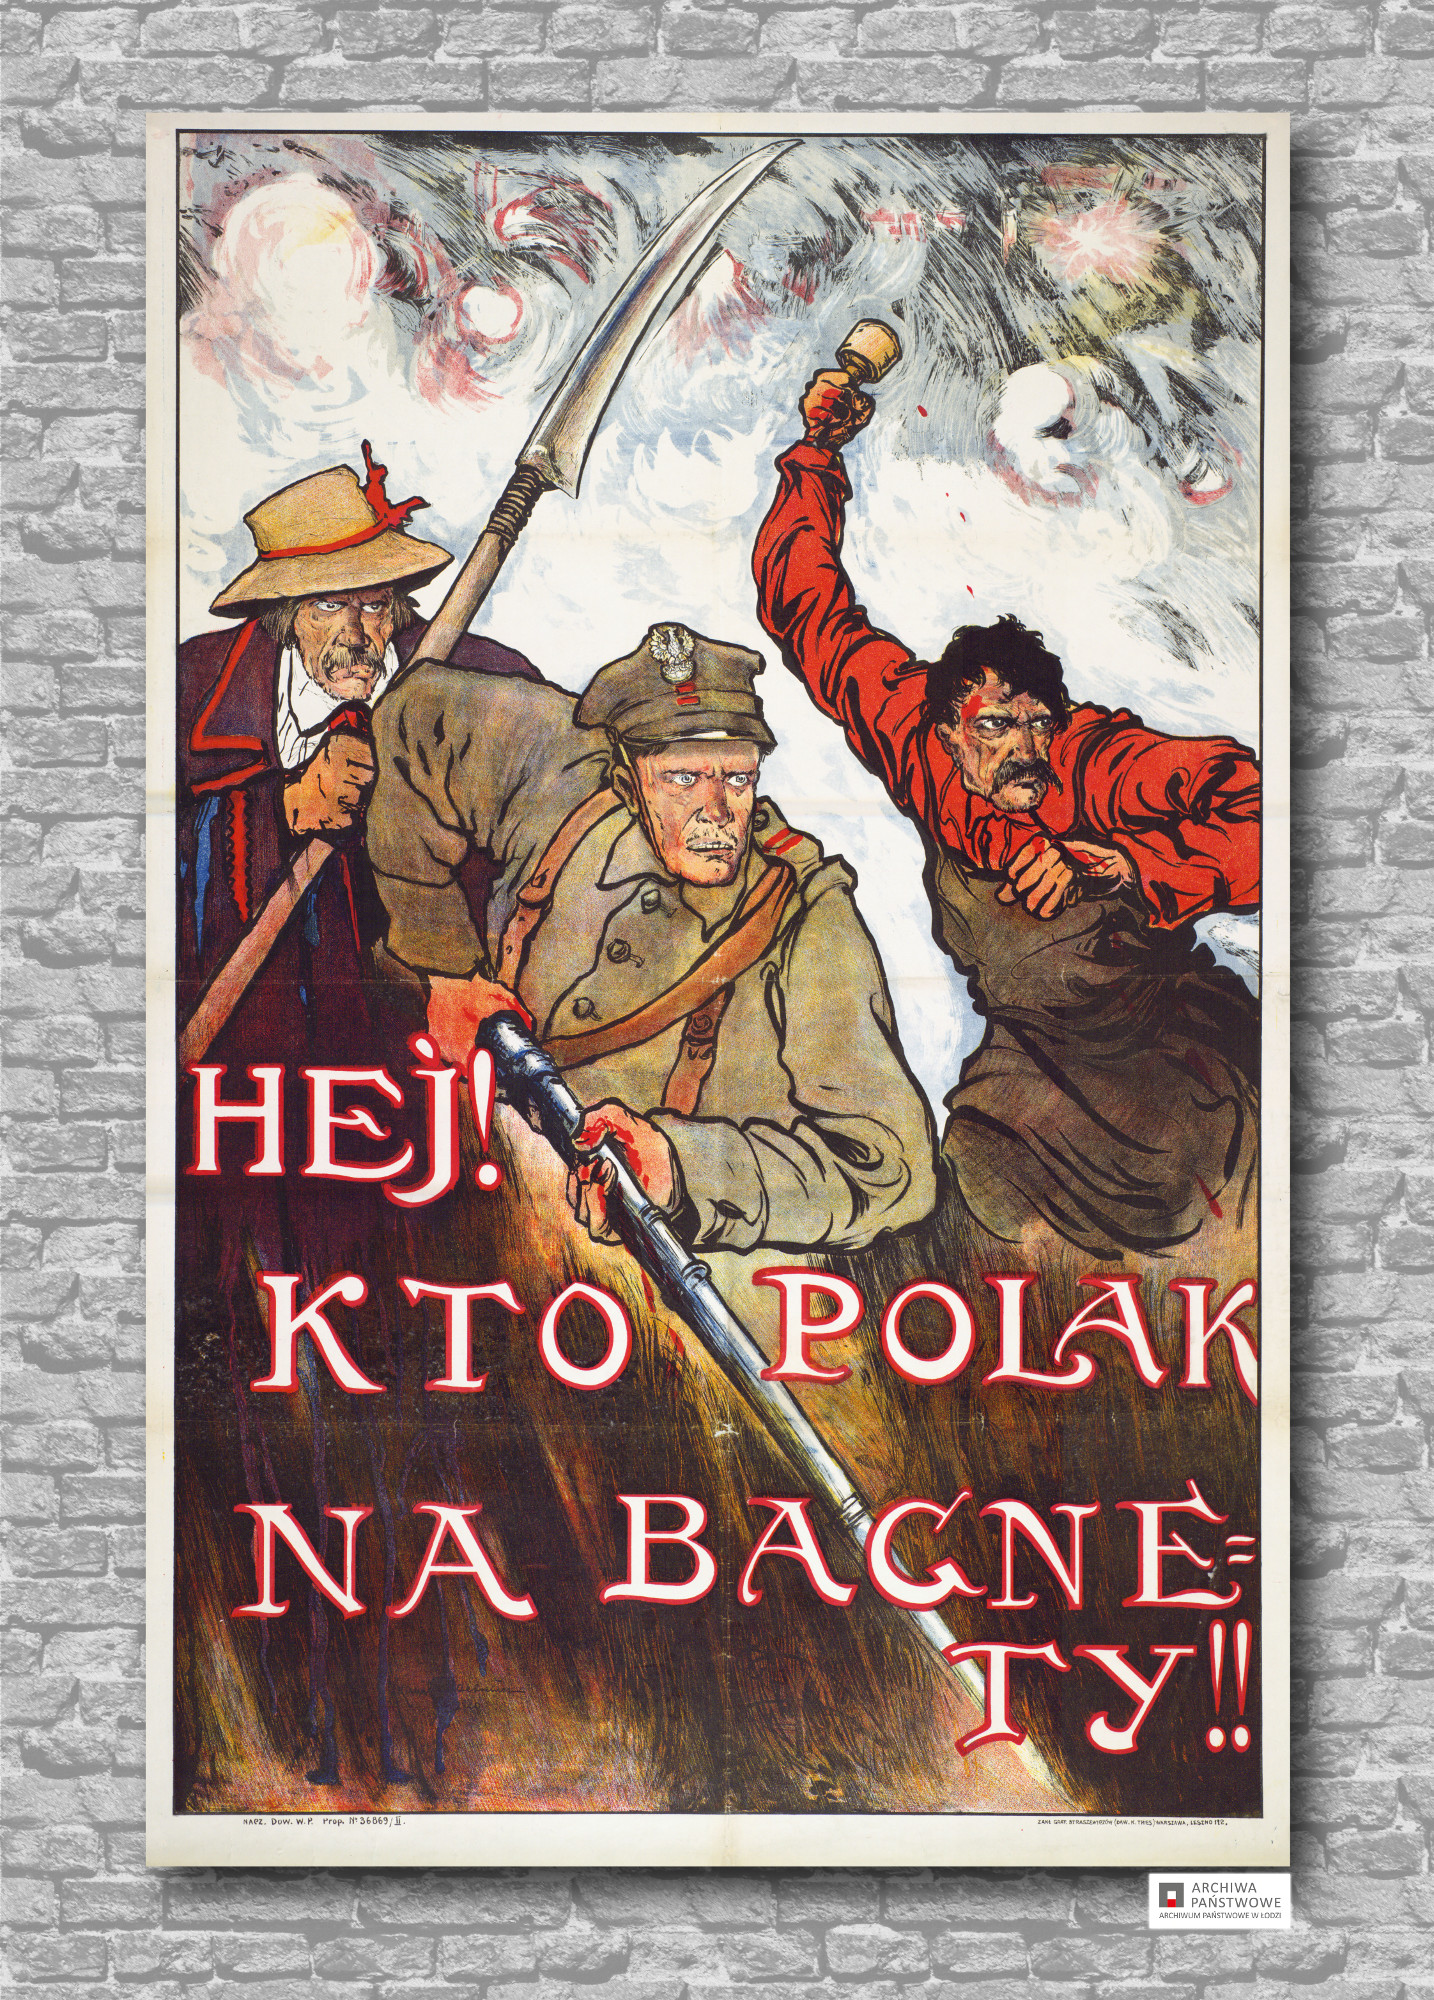 Plakat propagandowy z napisem "Hej! Kto Polak na bagnety!"